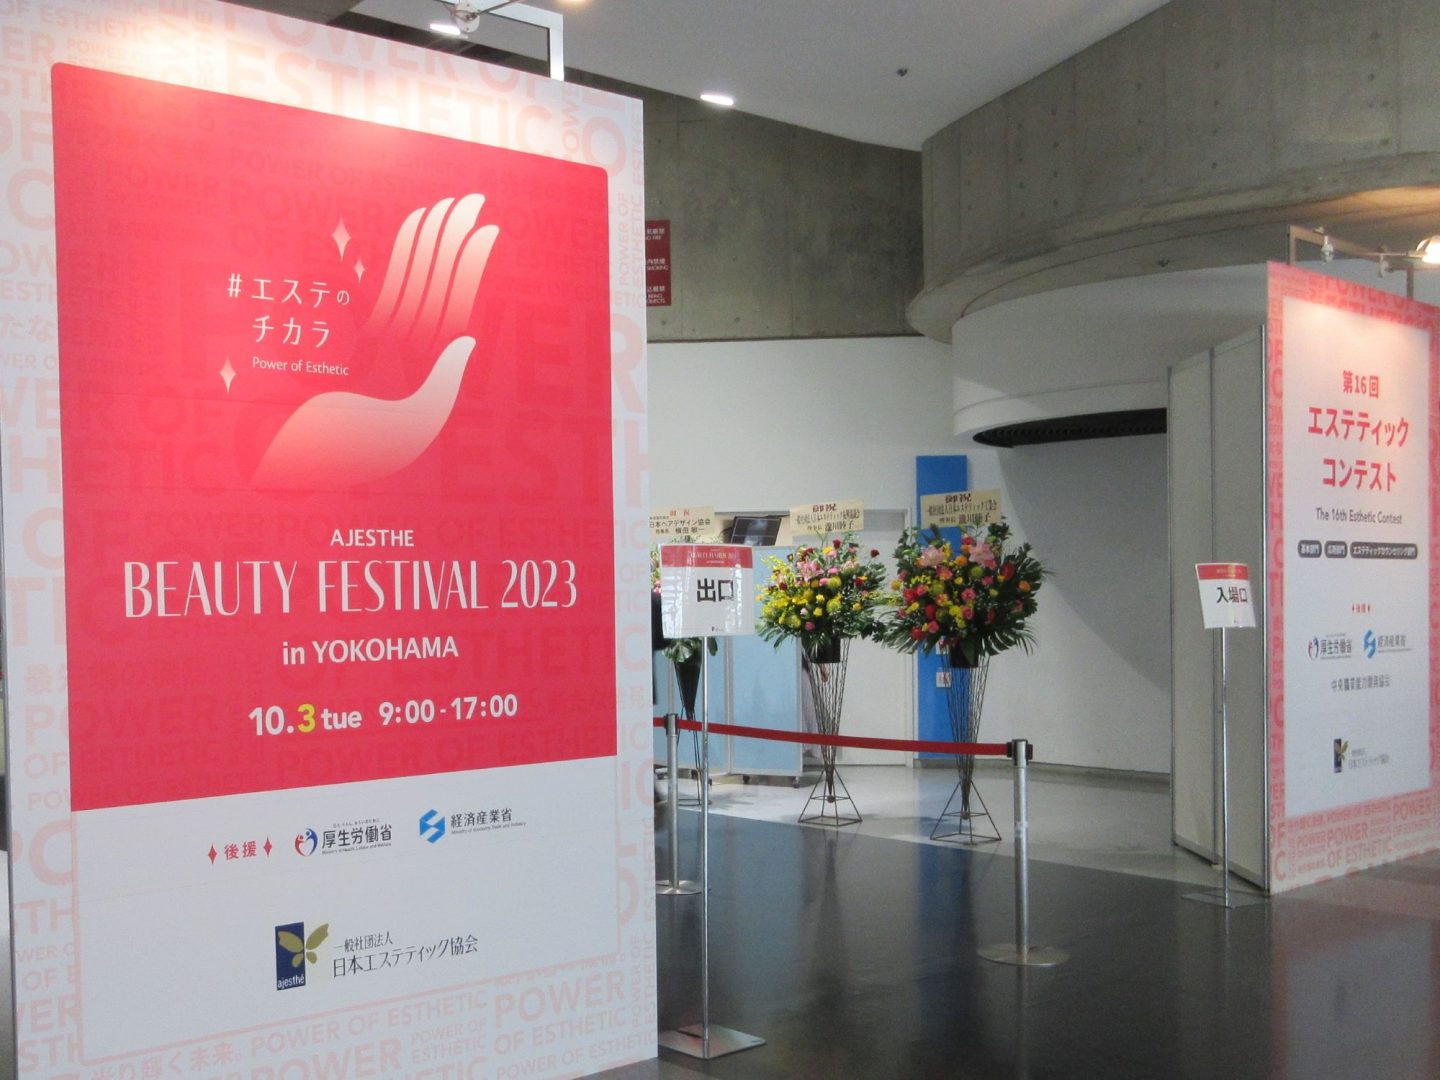 AJESTHE Beauty Festival 2023 in YOKOHAMA